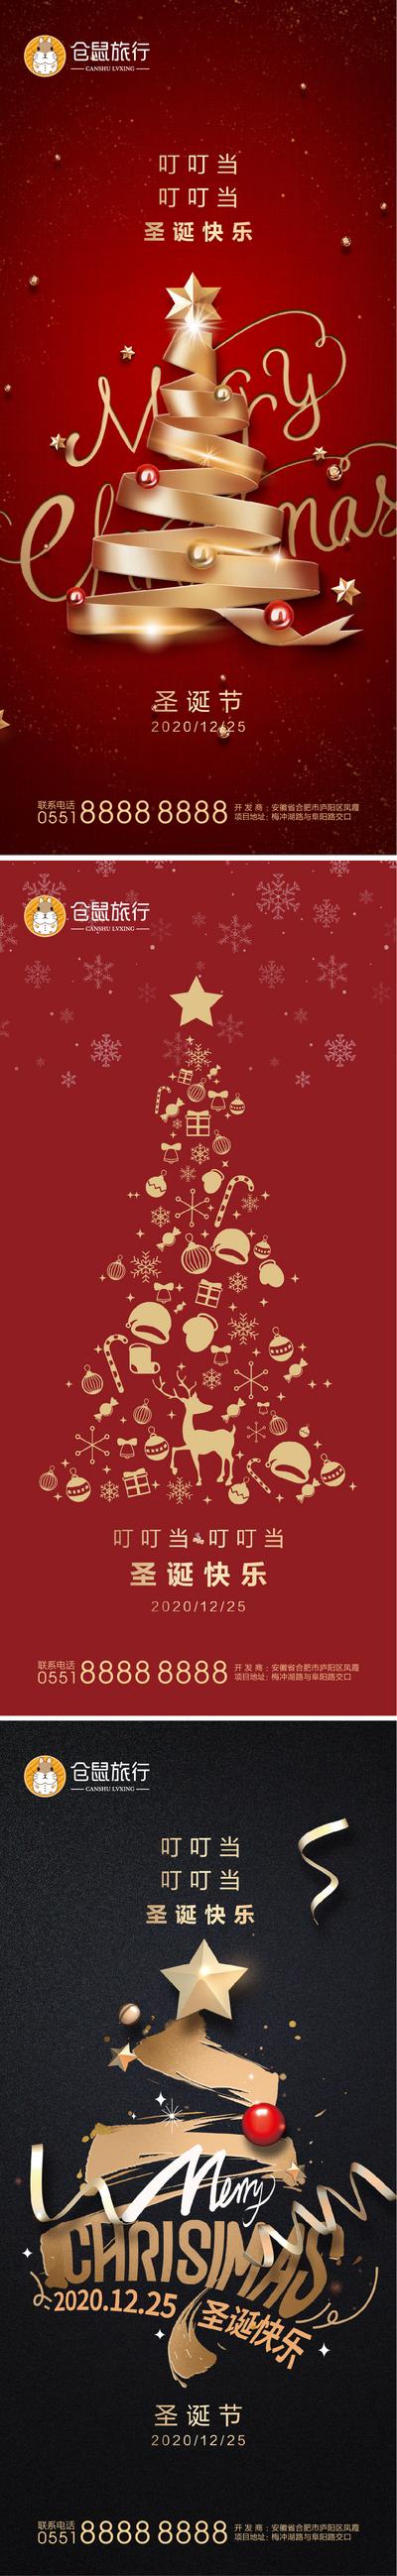 南门网 海报   圣诞节 公历节日 西方节日  圣诞树 彩带 红金